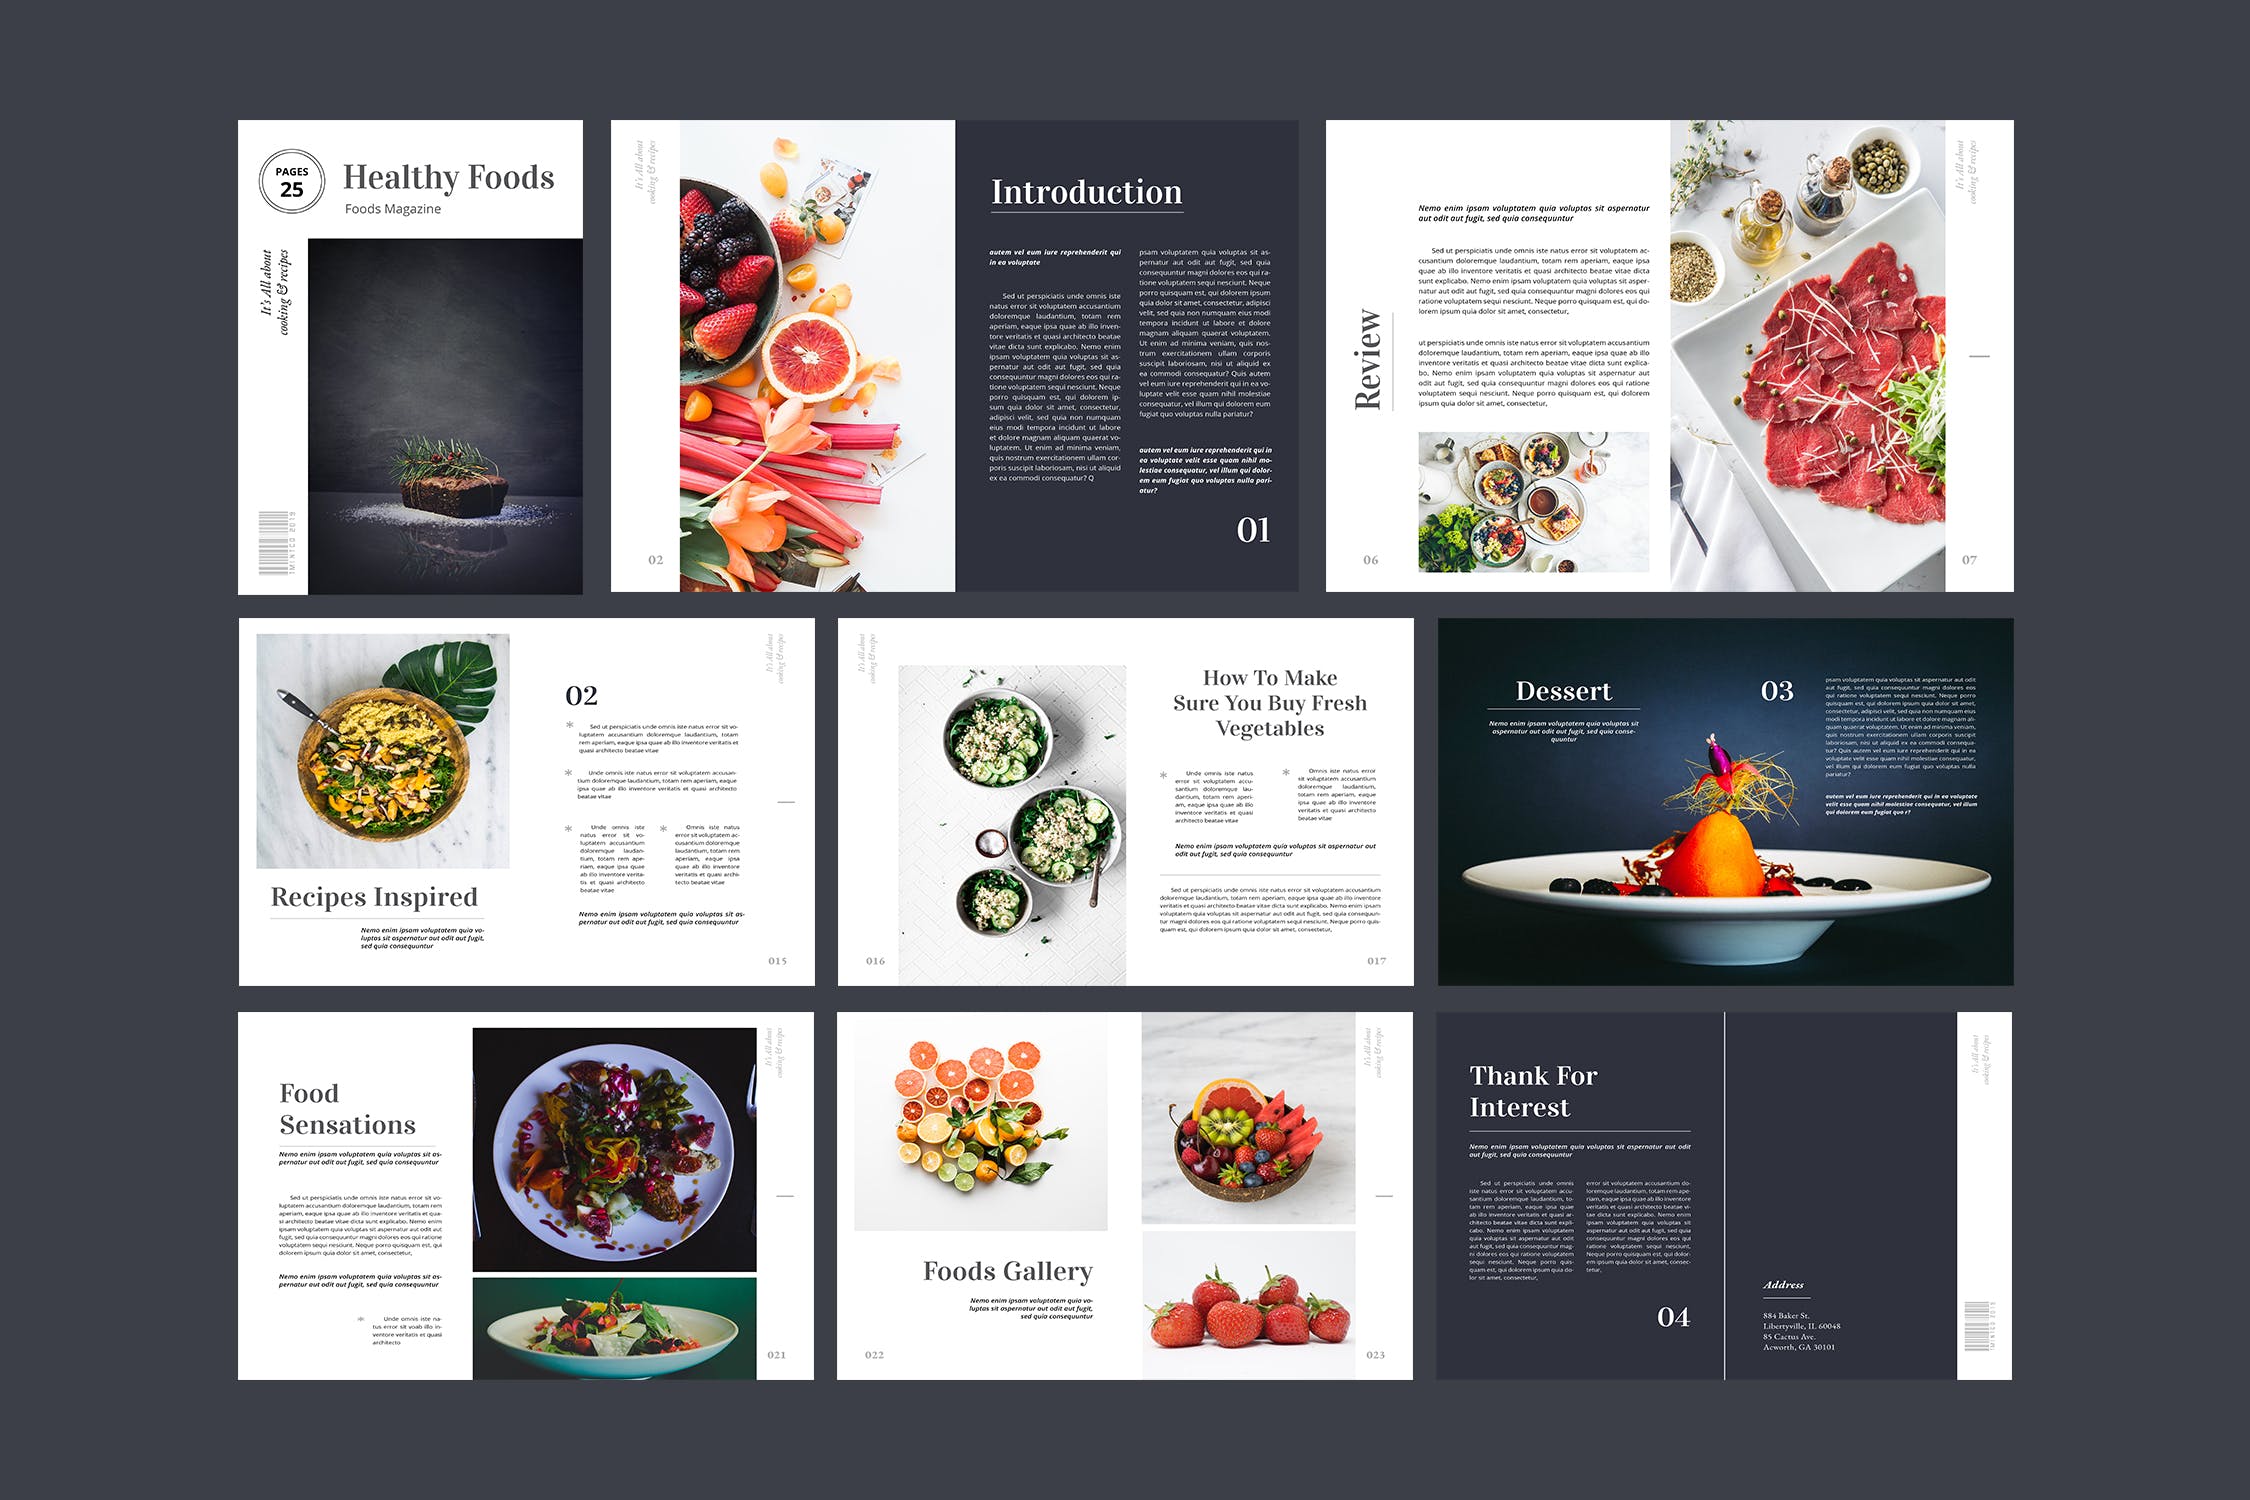 高端美食杂志排版设计模板 Food Magazine Template插图(2)